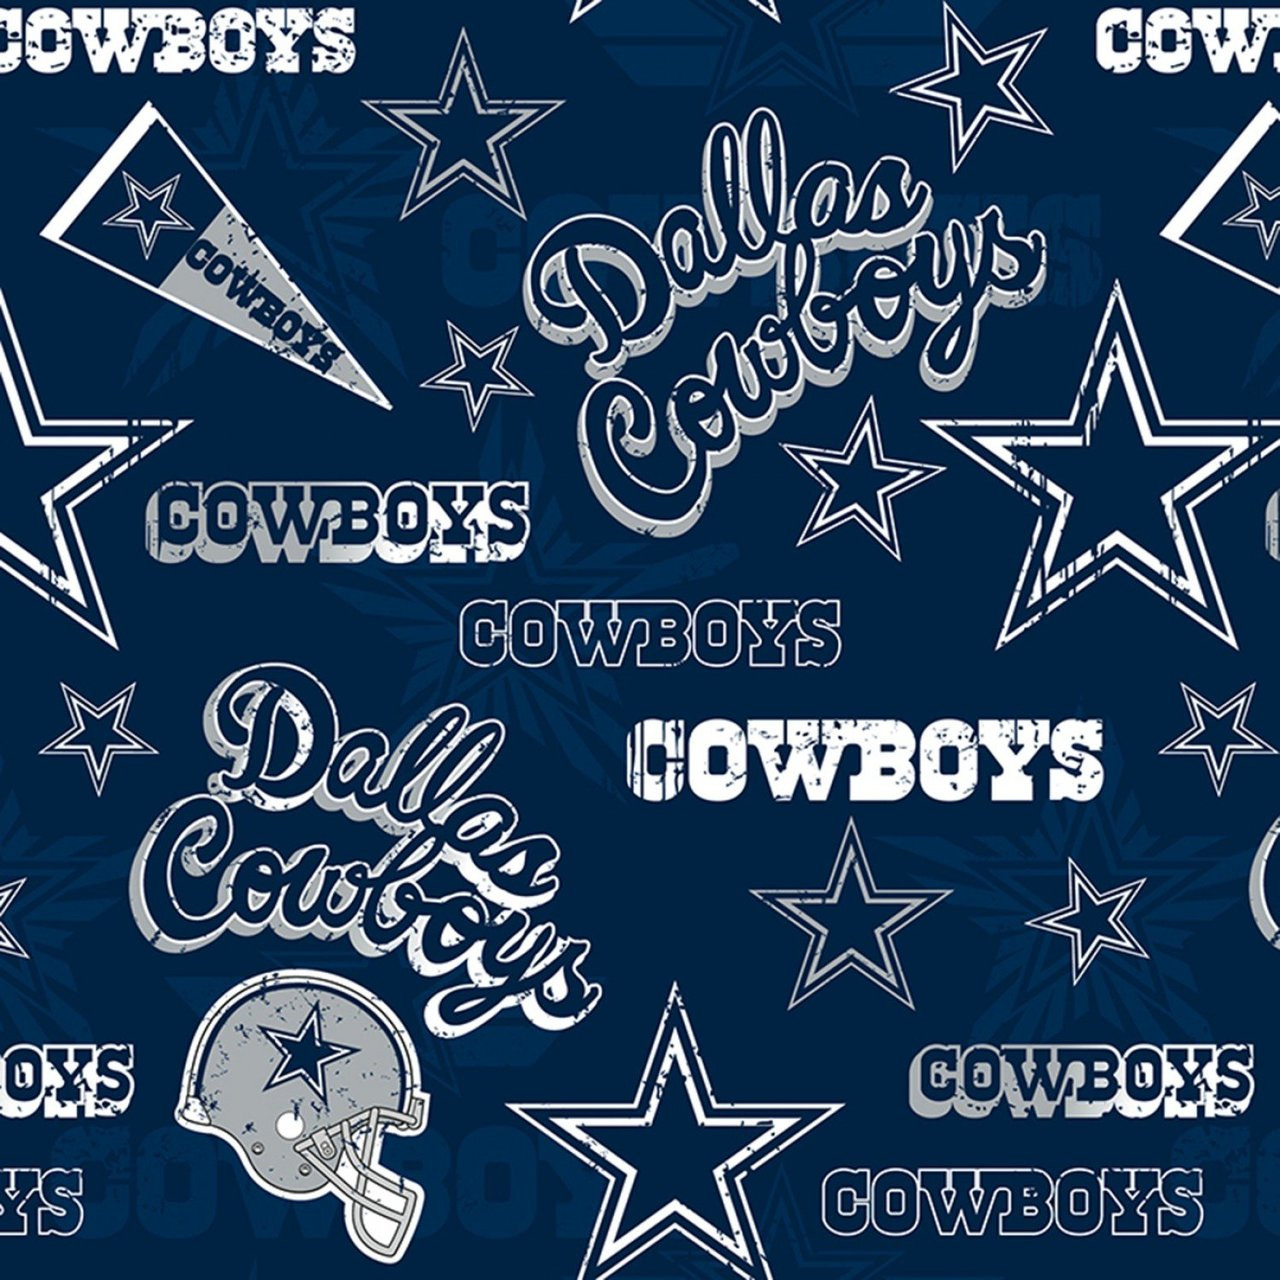 Dallas cowboys logo, Dallas cowboys wallpaper, Dallas cowboys pictures